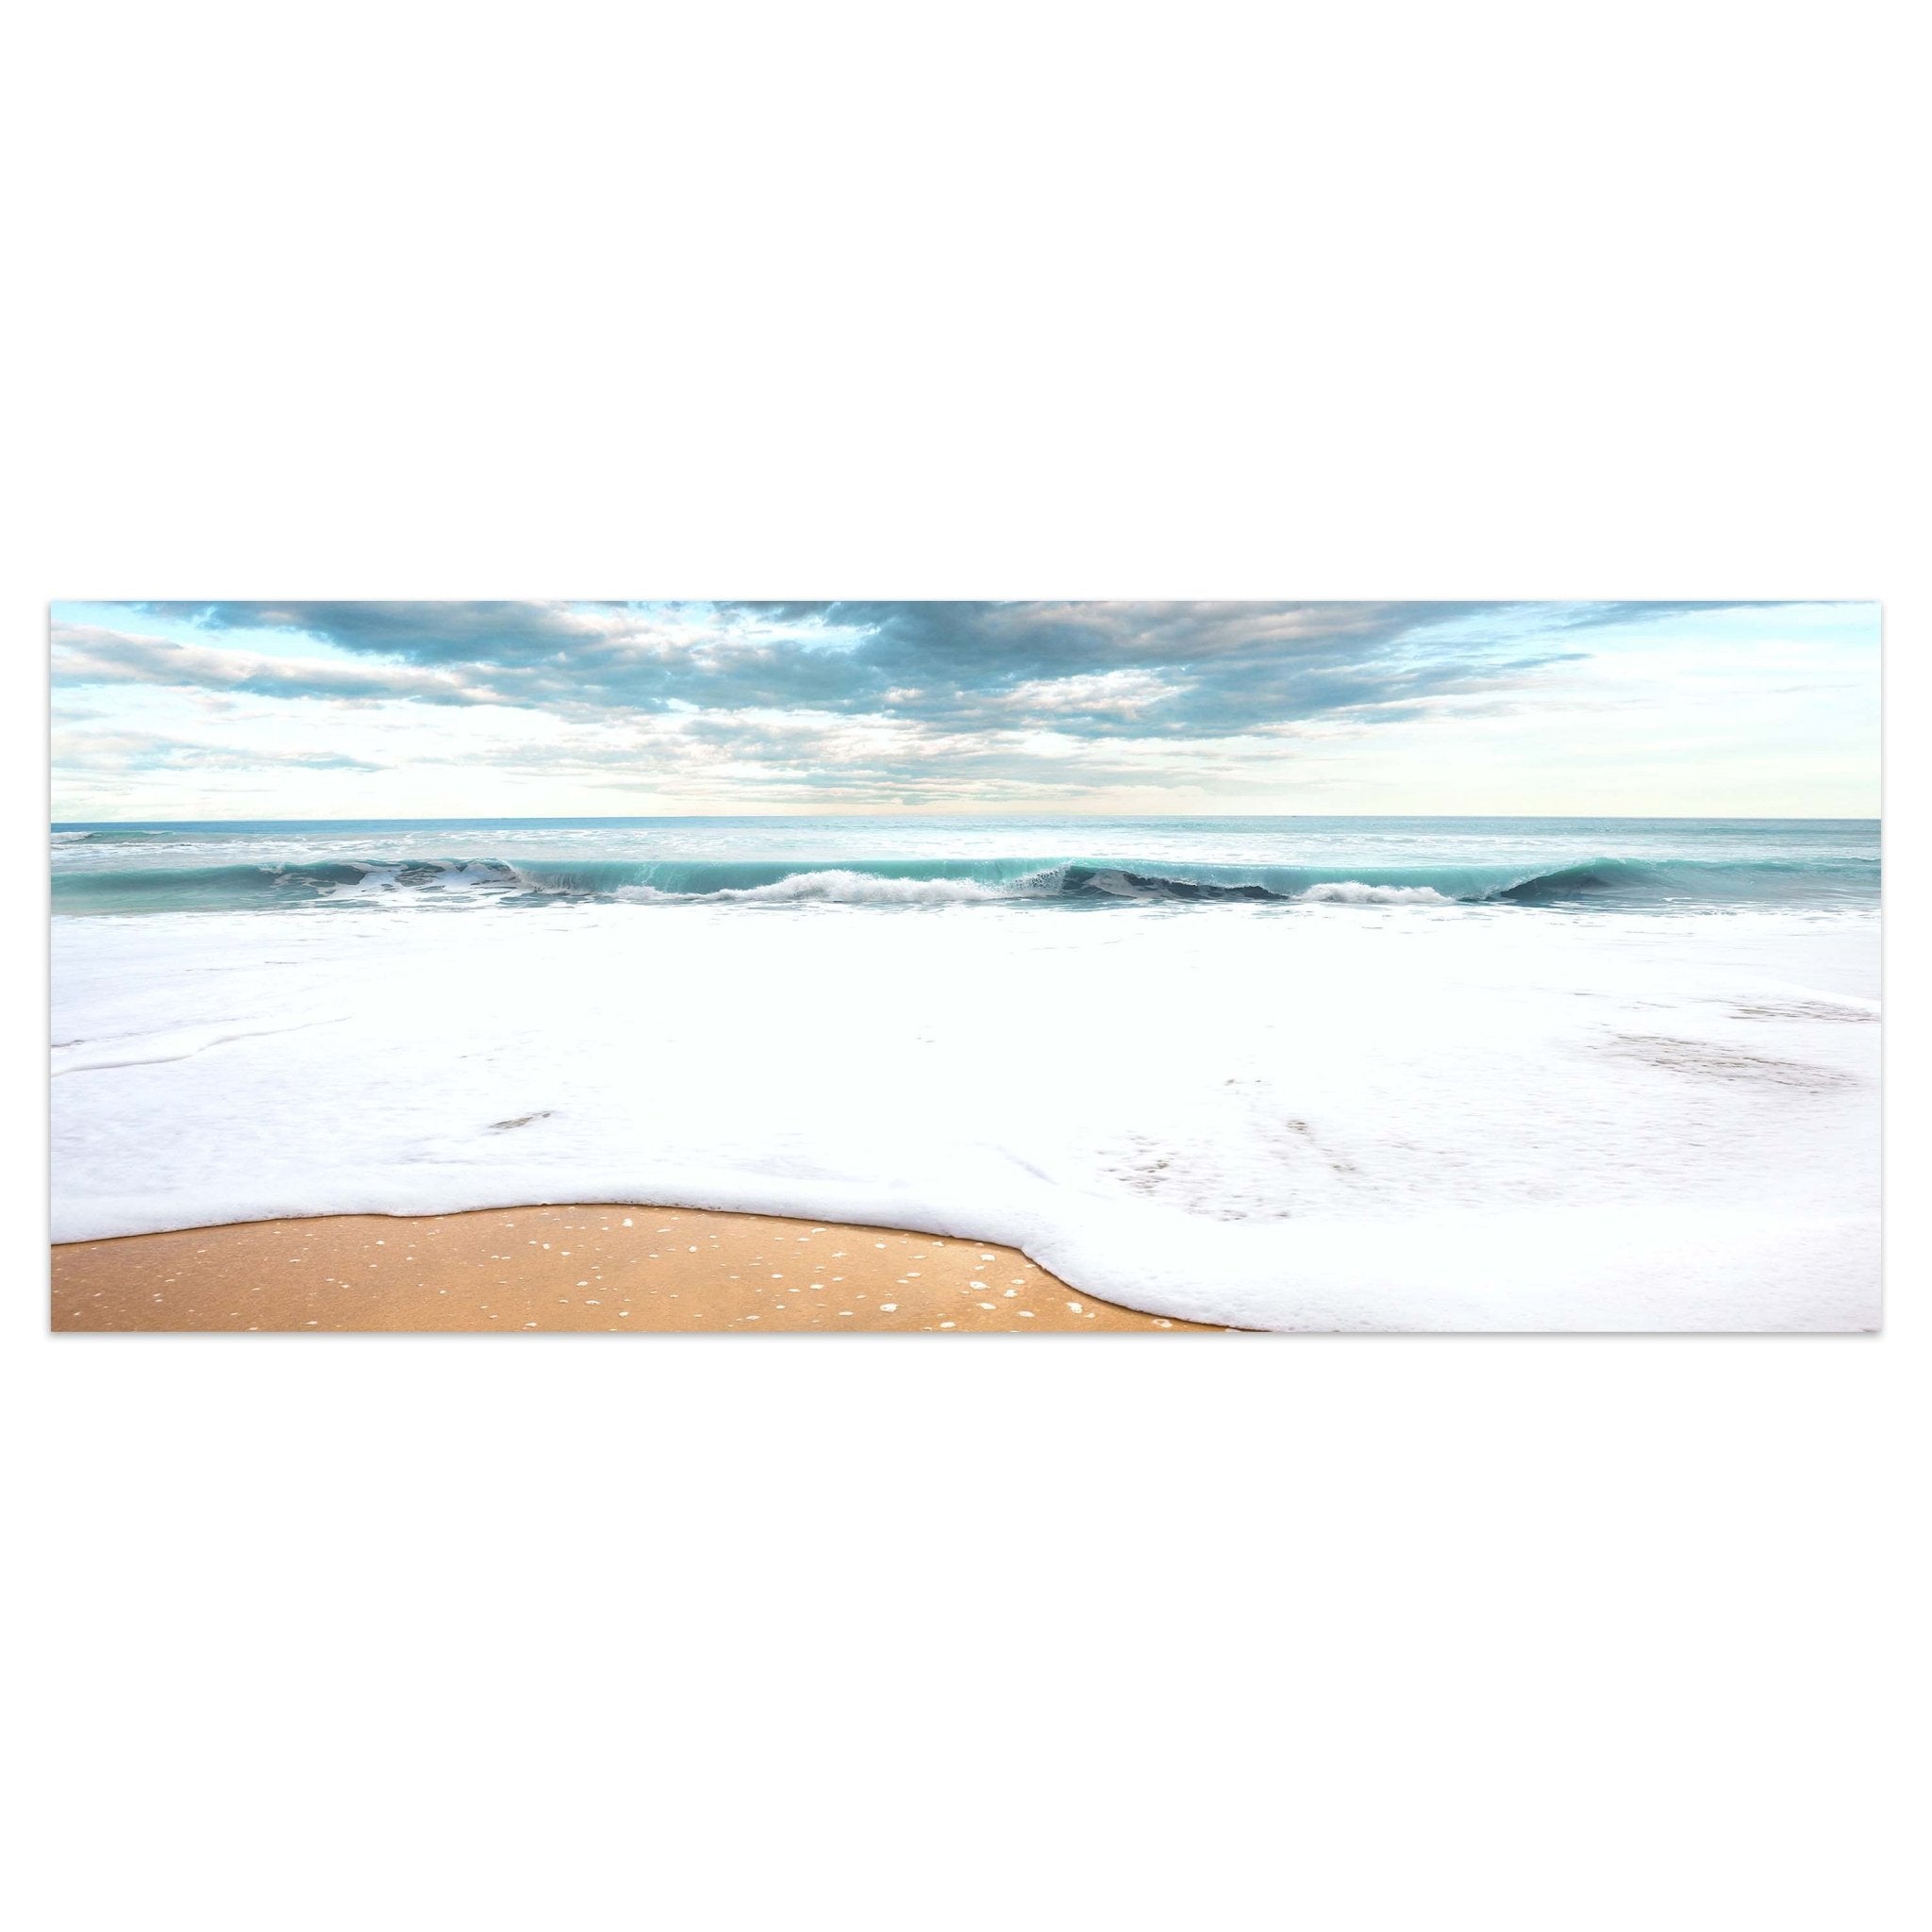 Leinwandbild Strand und idyllischer blauer Himmel M0925 kaufen - Bild 1